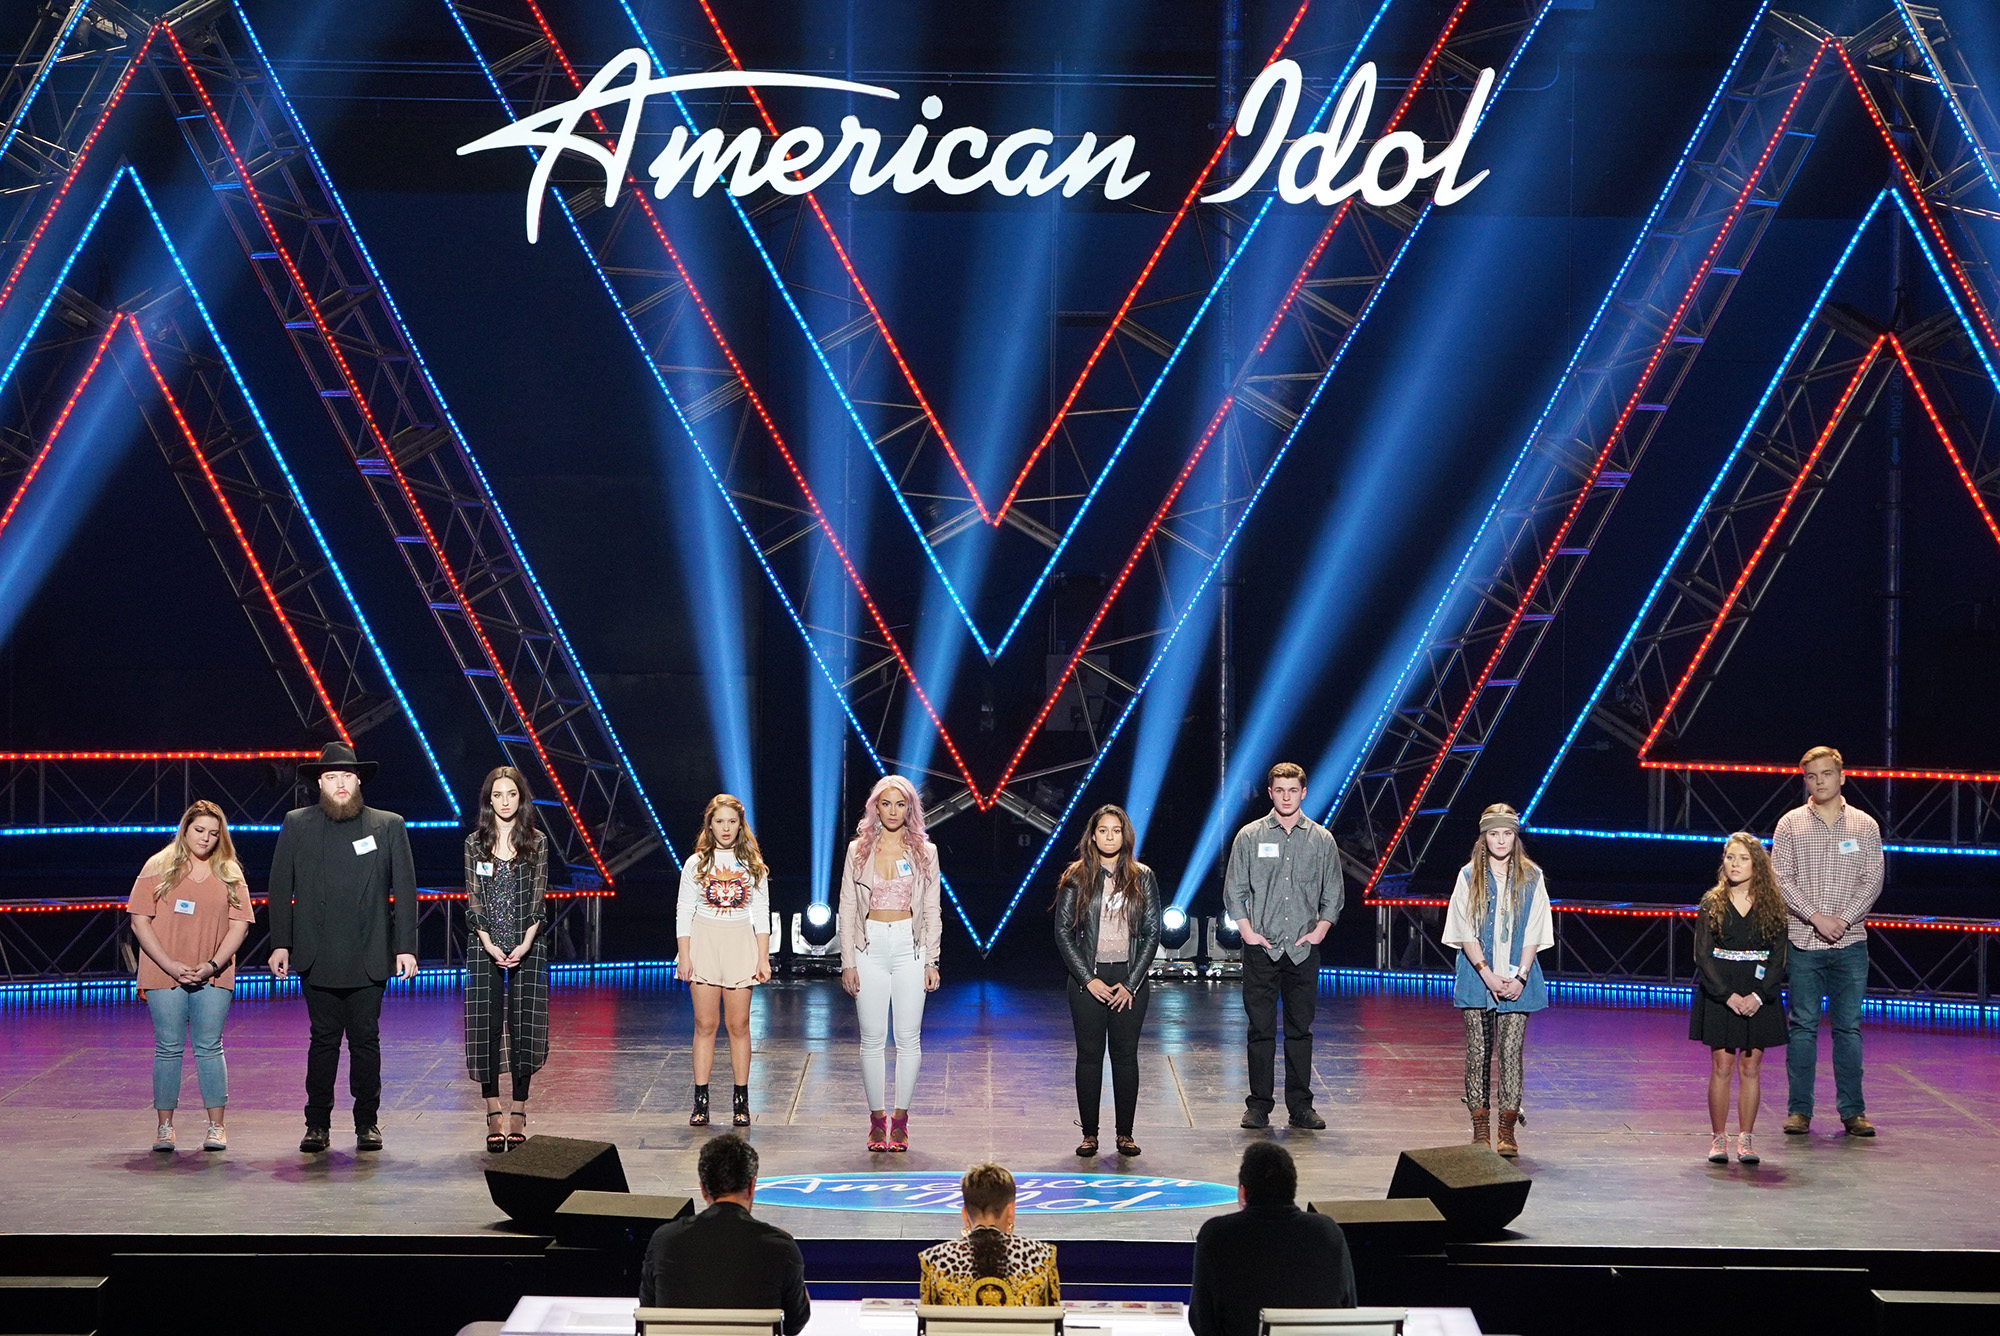 American Idol ?fit=200%2C1